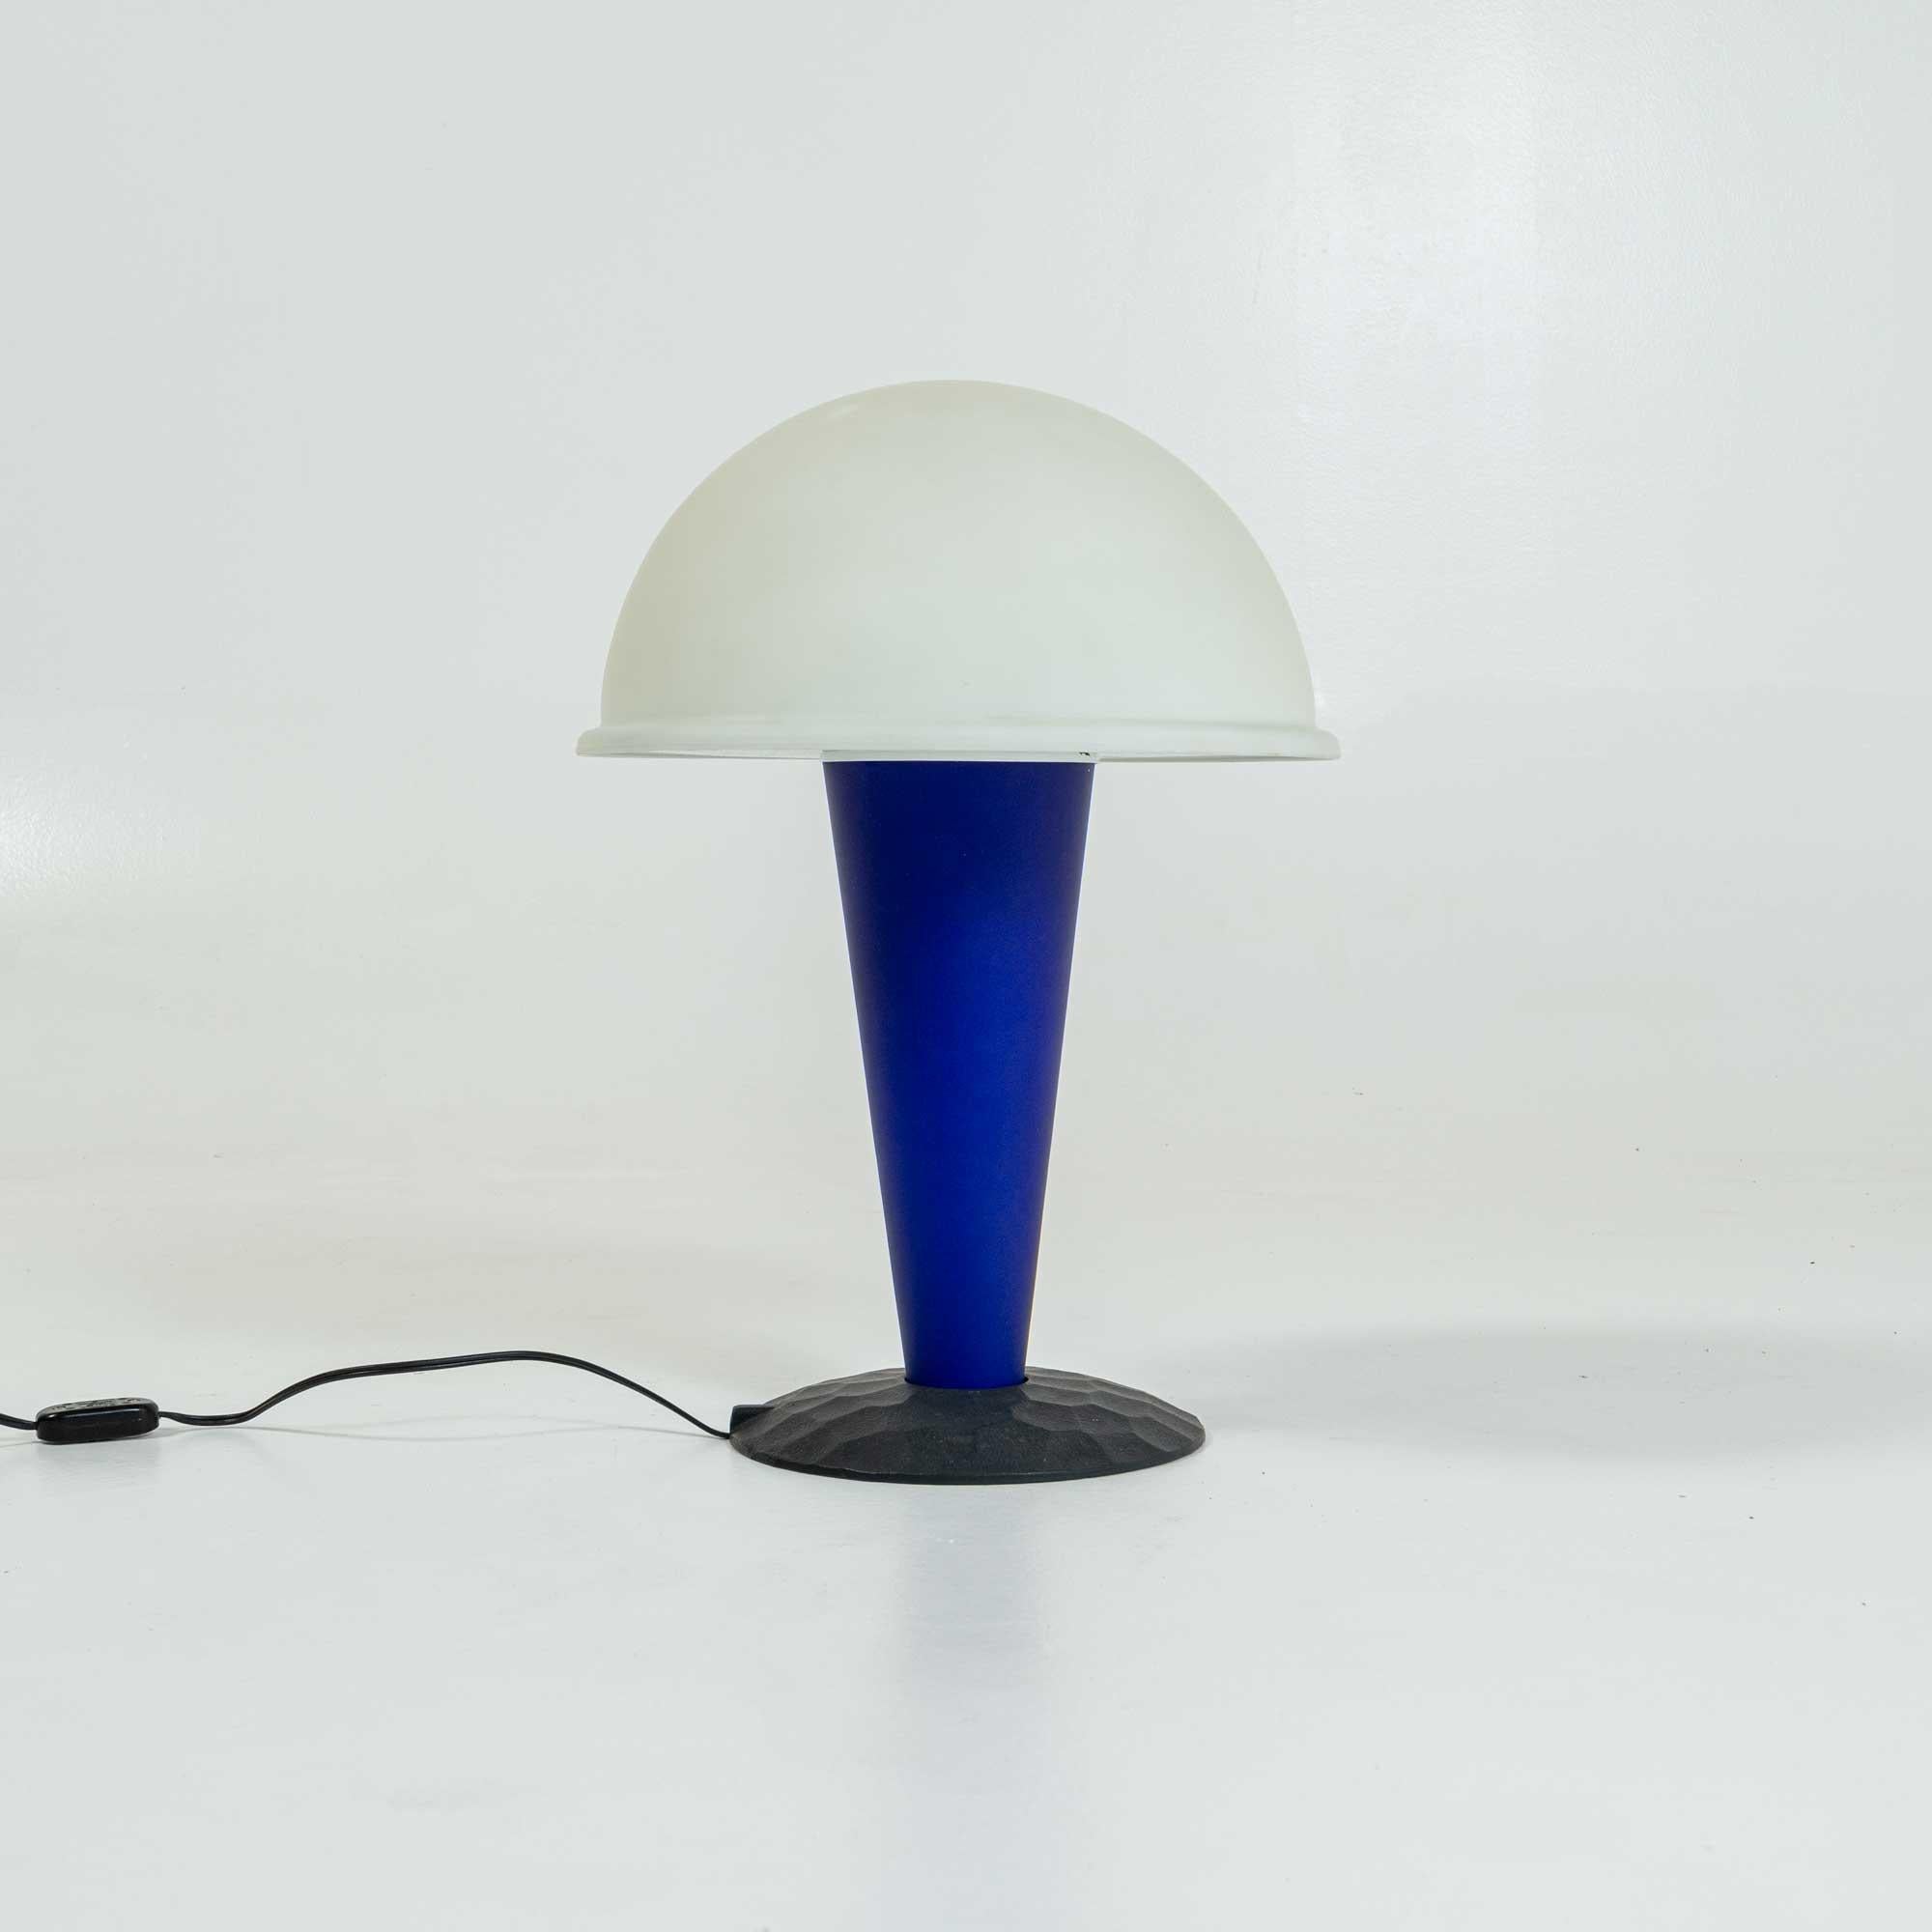 Lampe de table moderne de Ron Rezek, vers les années 1980. Également connue sous le nom de 